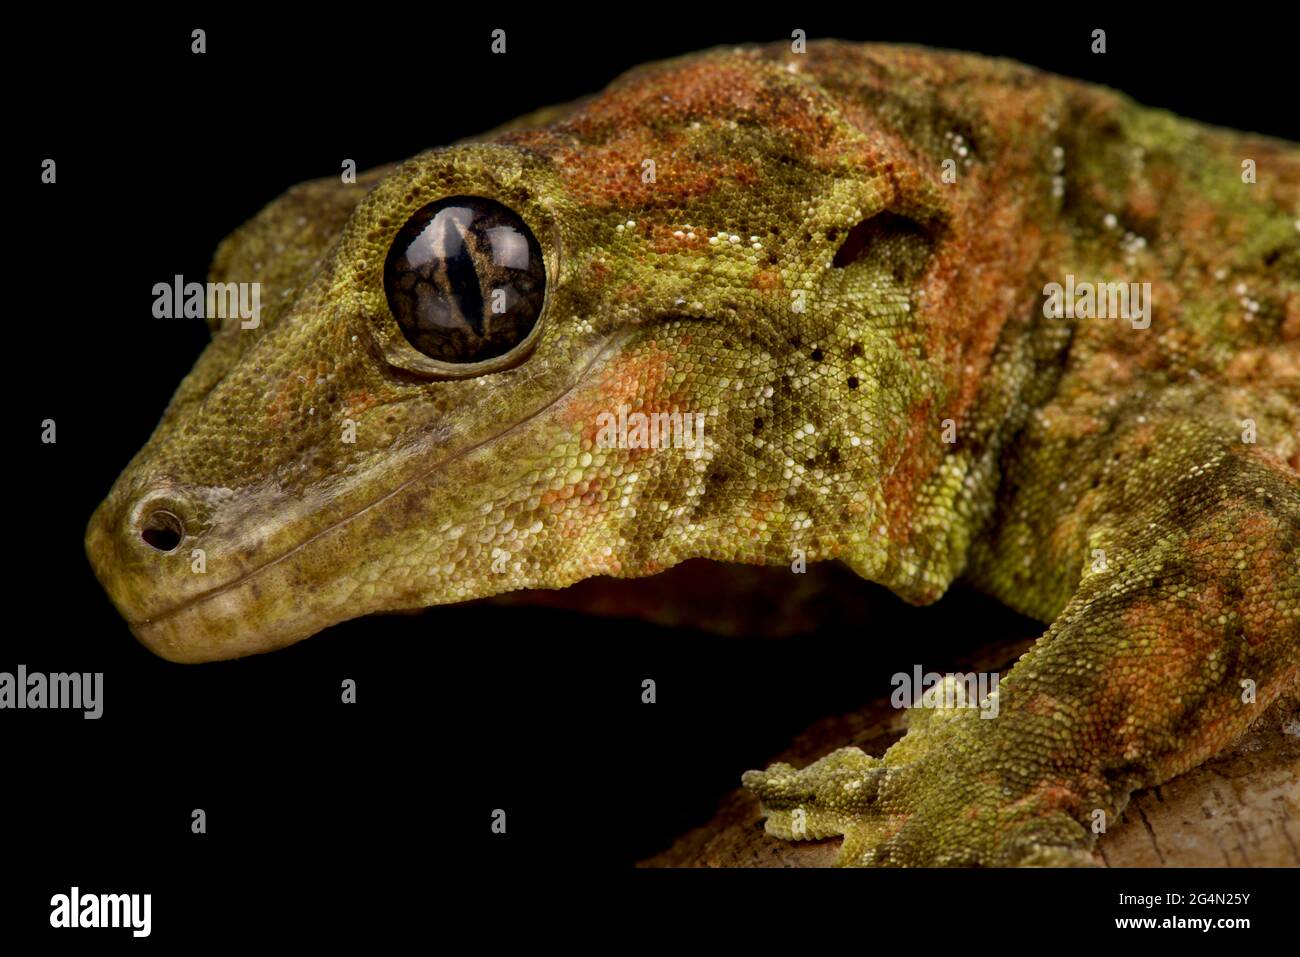 Black eyed Mossy New Caledonian gecko (Mniarogekko chahoua) Stock Photo